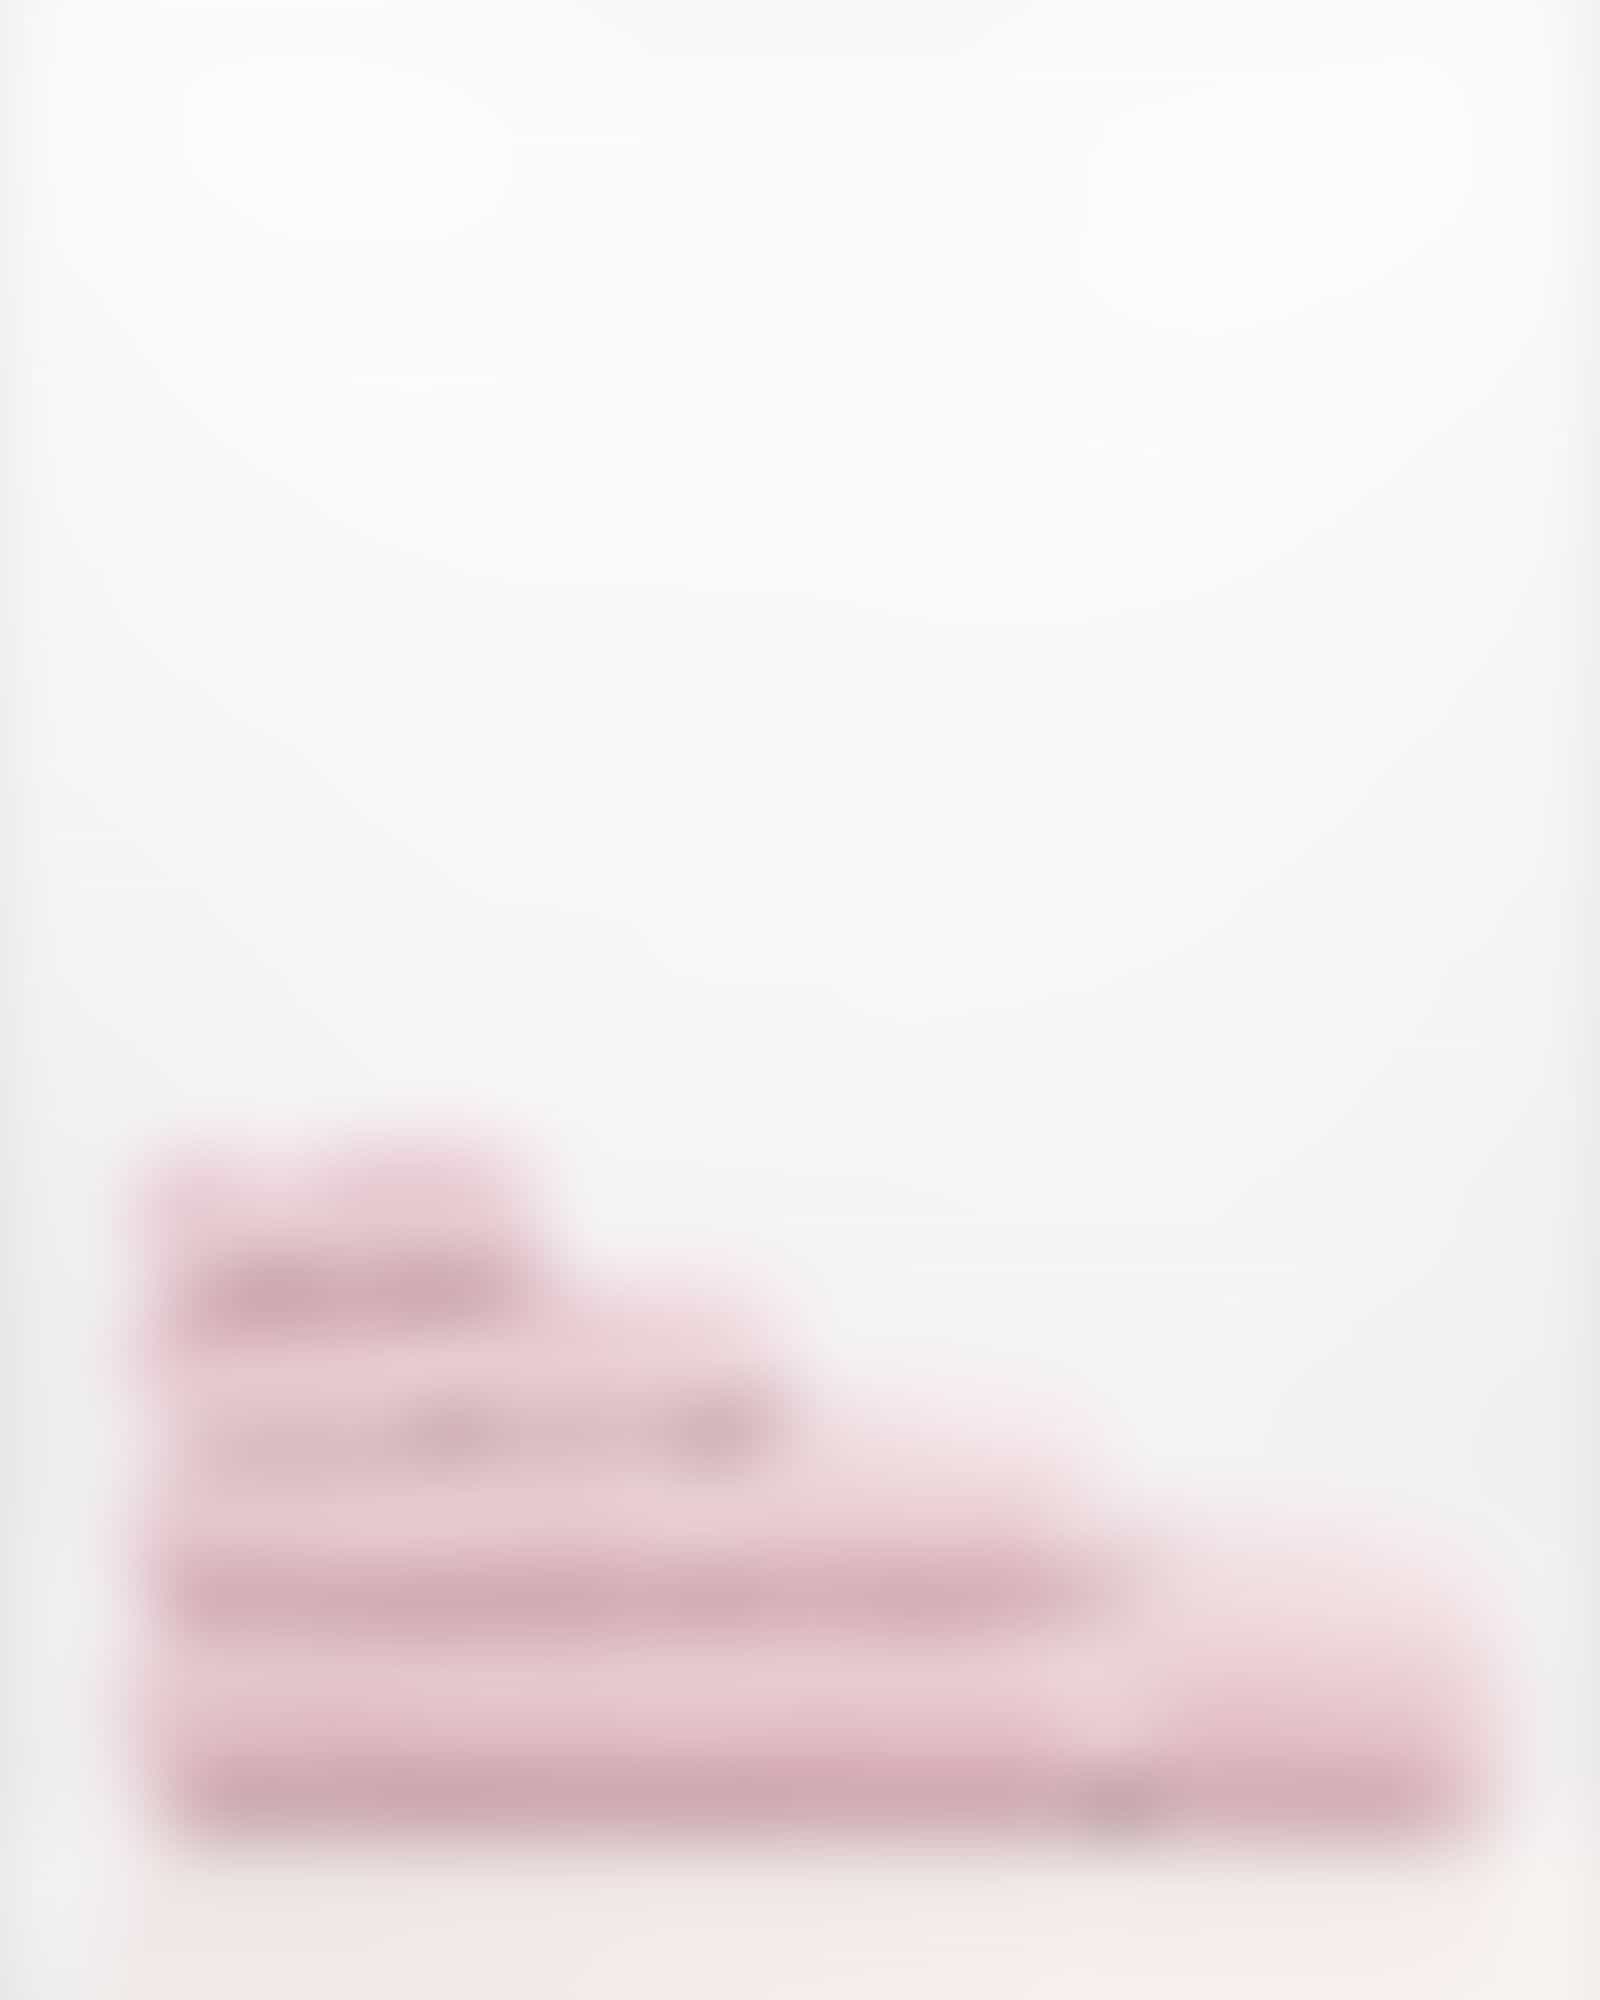 Vossen Handtücher Belief - Farbe: sea lavender - 3270 - Waschhandschuh 16x22 cm